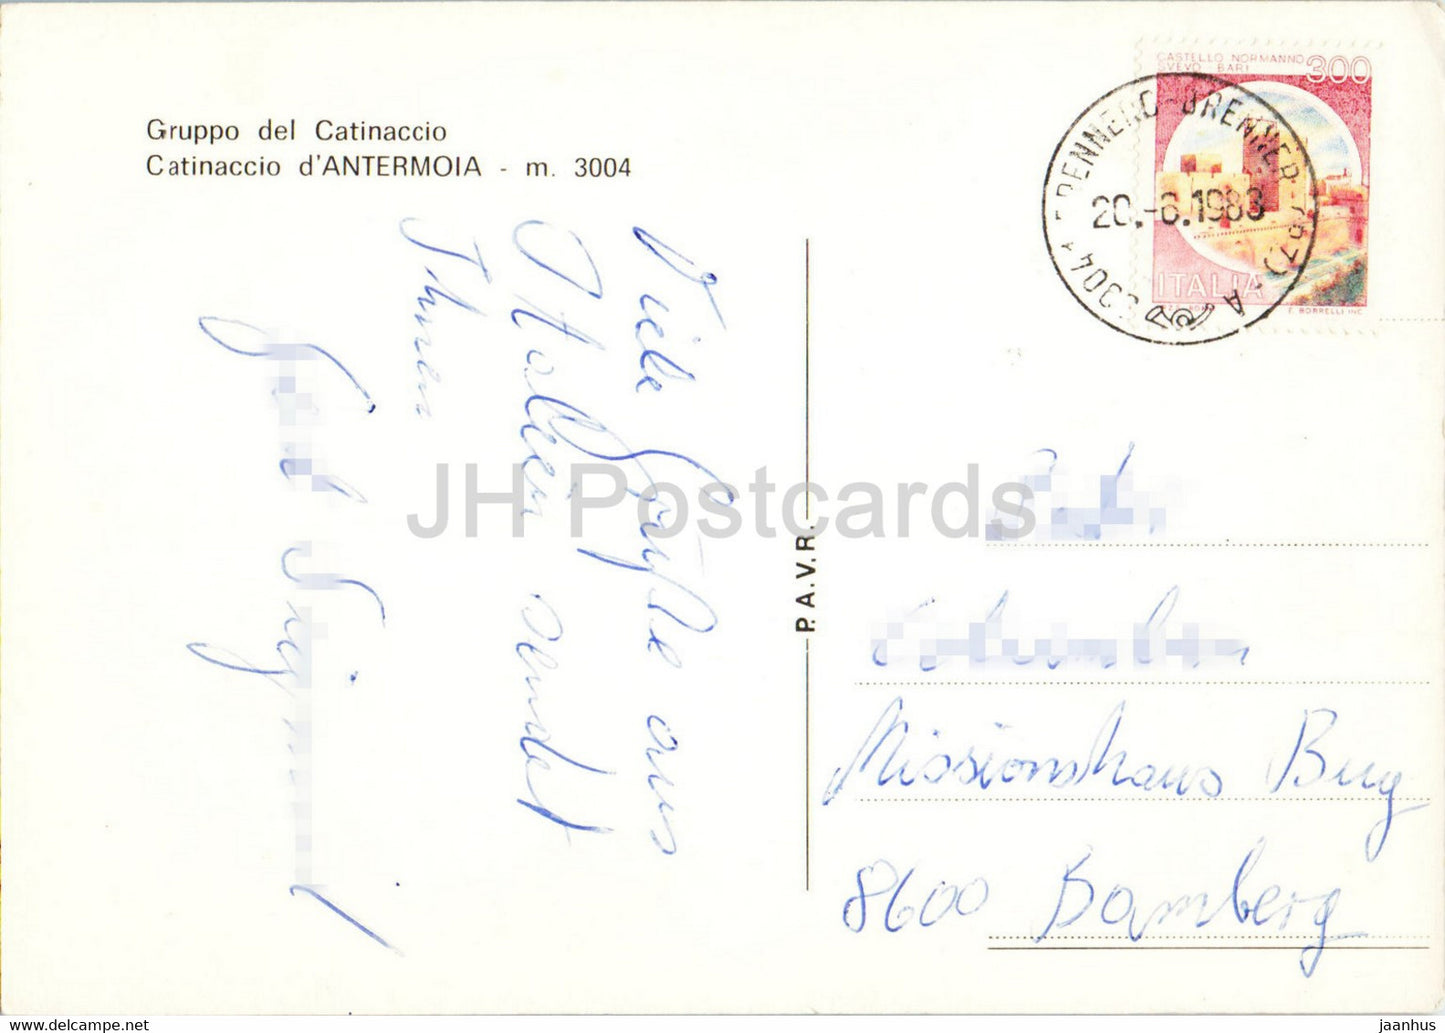 Rifugio Antermoia – Gruppo del Catinaccio – 1983 – Italien – gebraucht